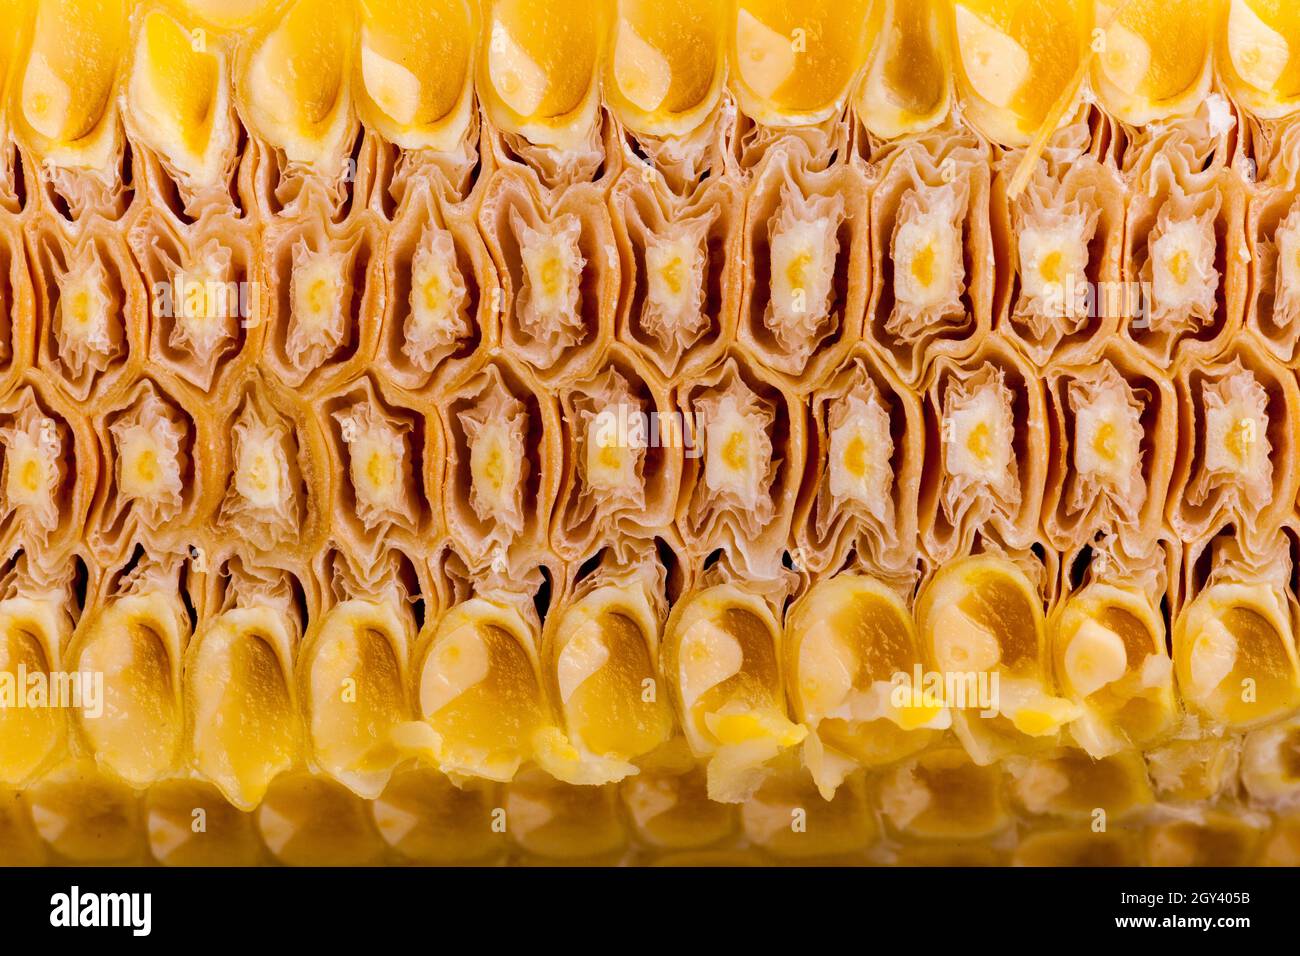 corte a través de mazorcas de maíz Foto de stock